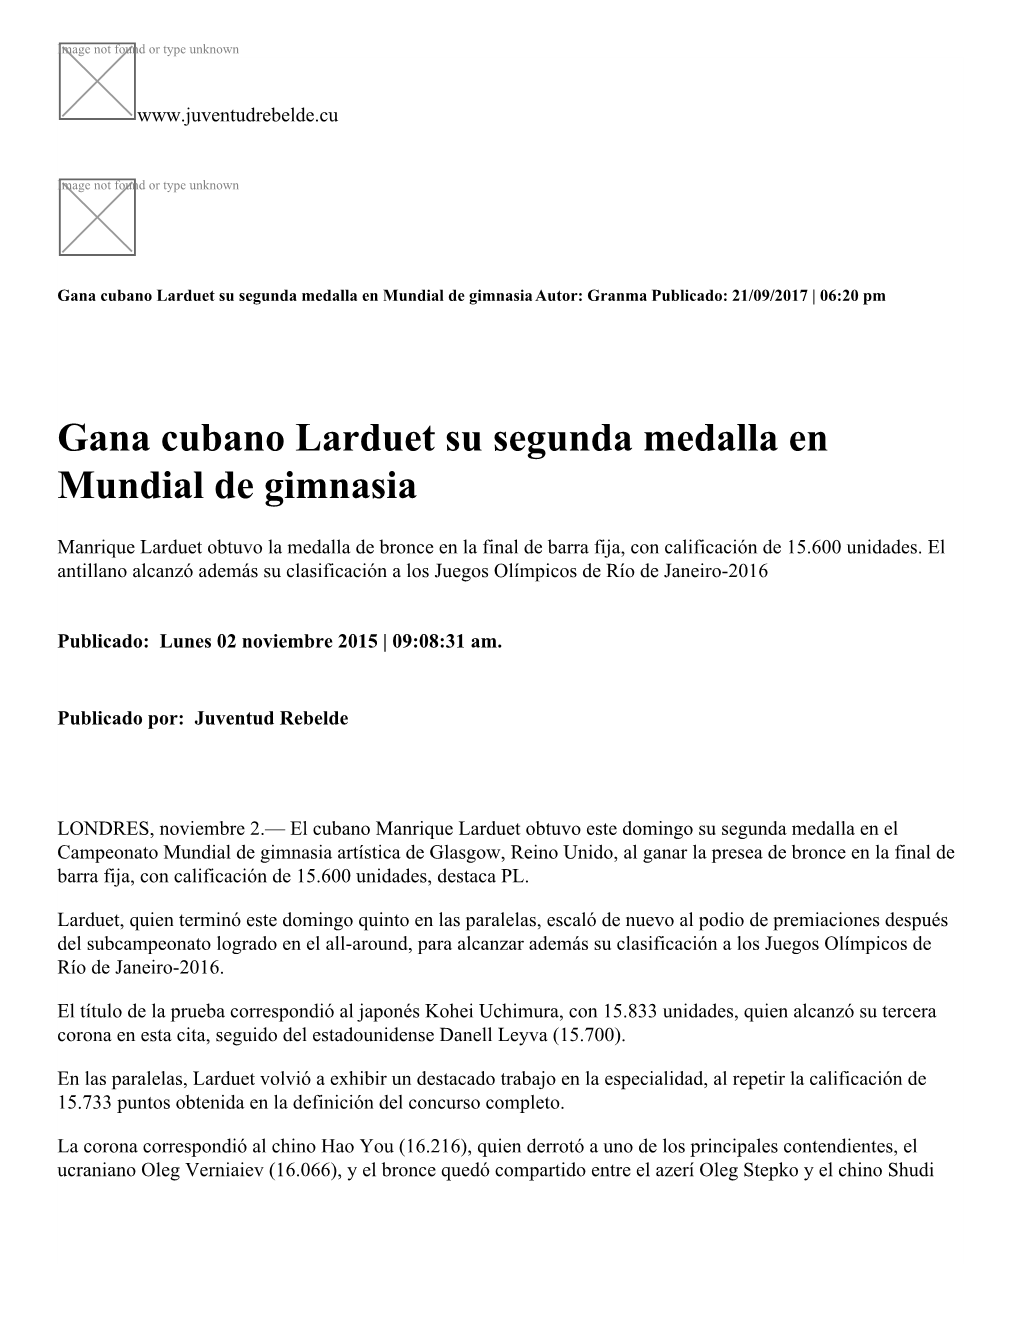 Gana Cubano Larduet Su Segunda Medalla En Mundial De Gimnasia Autor: Granma Publicado: 21/09/2017 | 06:20 Pm